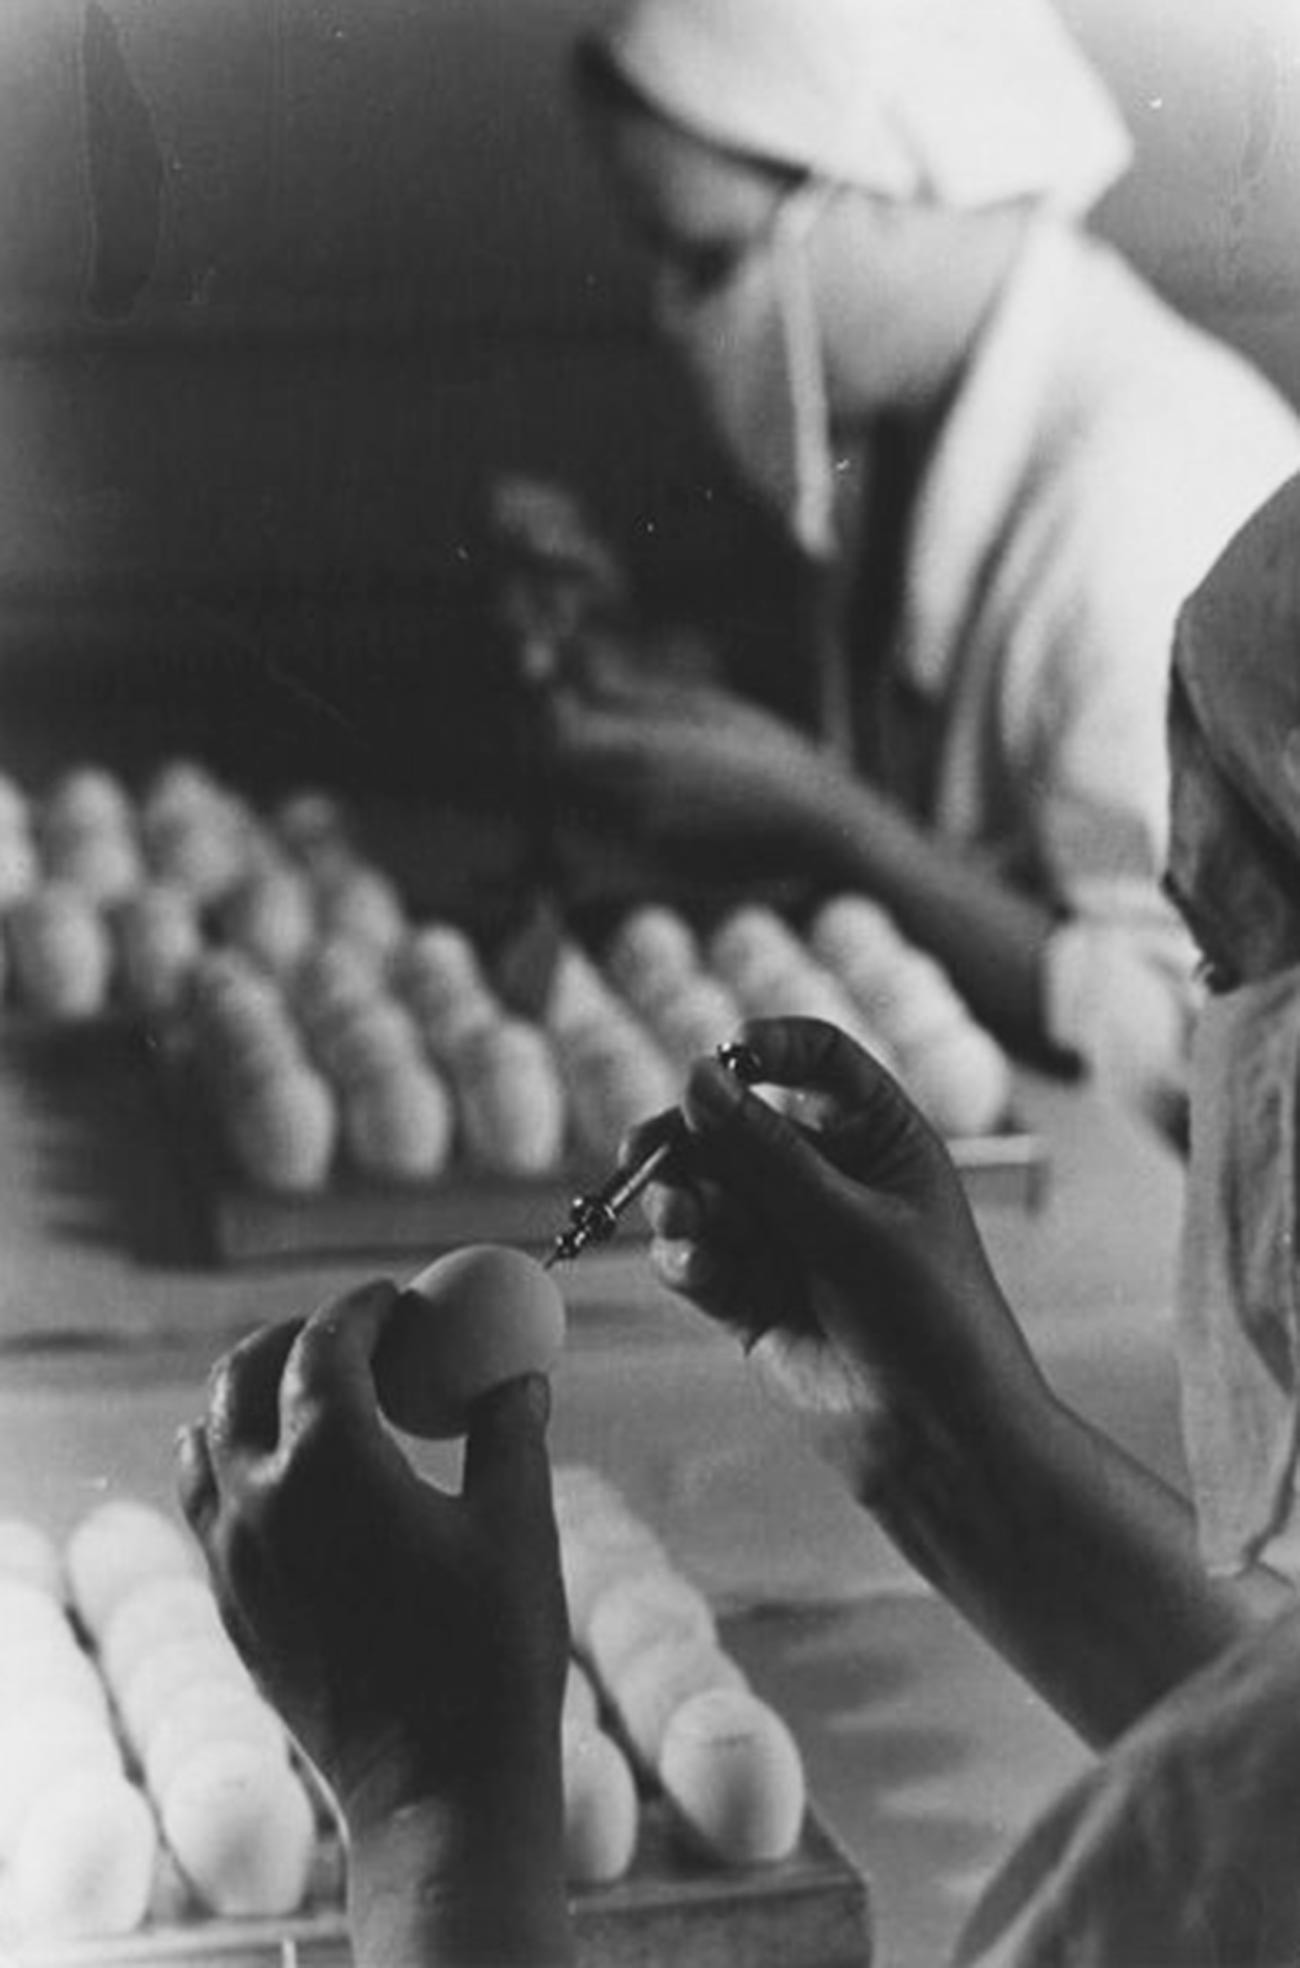 インフルエンザワクチンの試験、1950年代